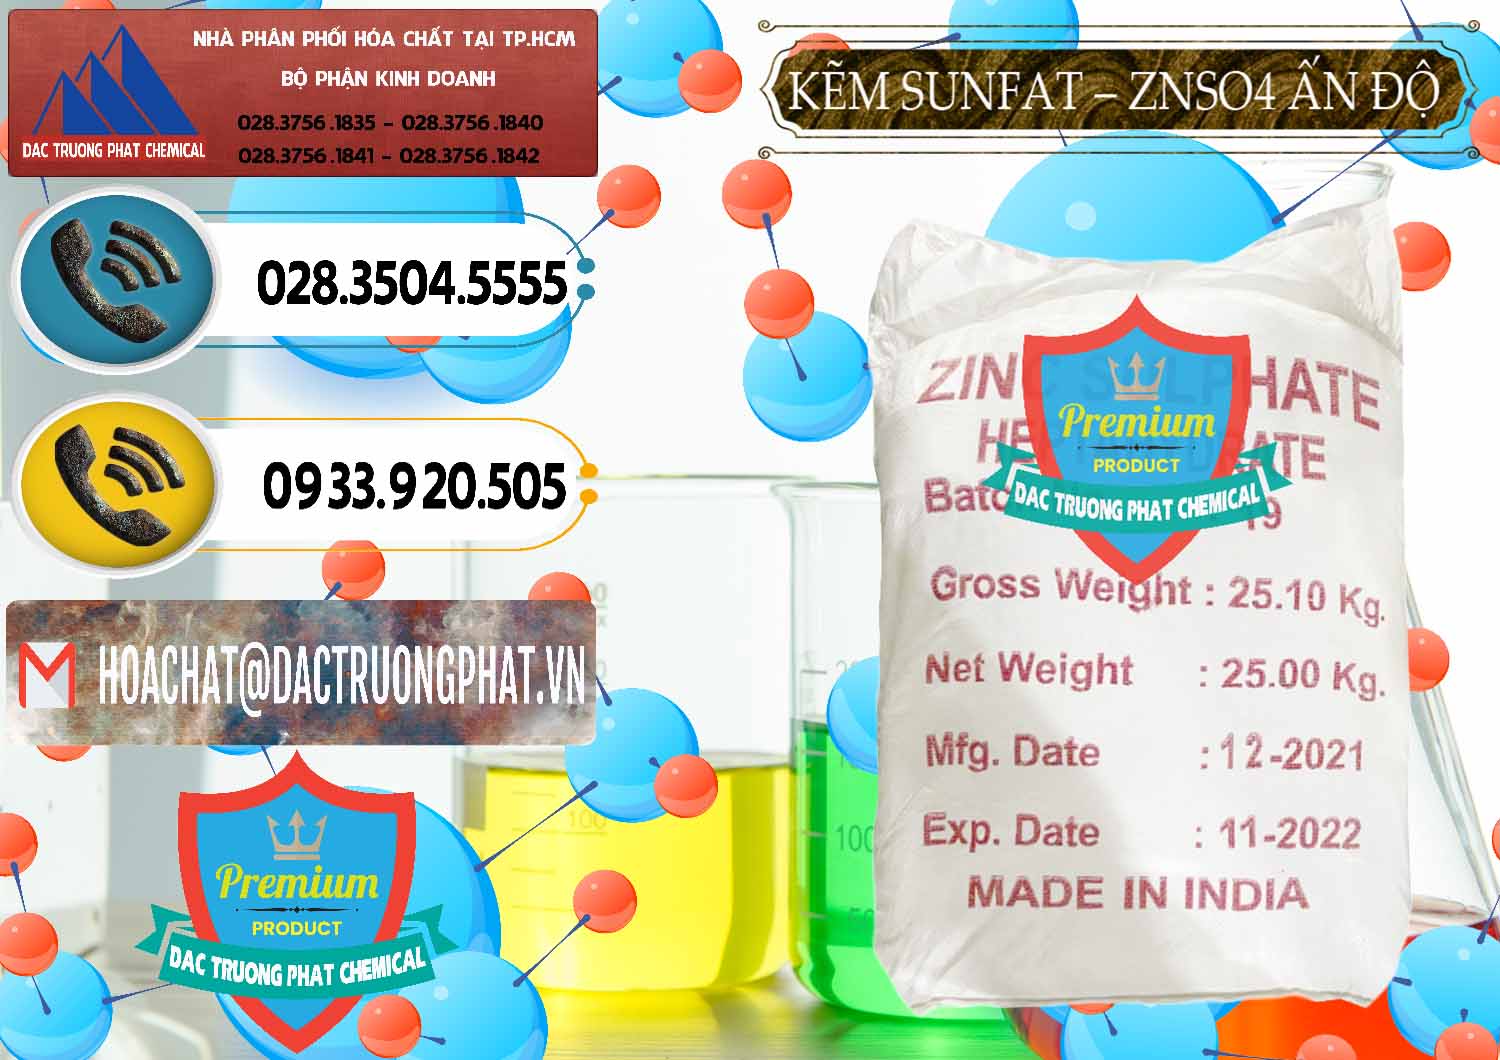 Nhà cung ứng và bán Kẽm Sunfat – ZNSO4.7H2O Ấn Độ India - 0417 - Cty chuyên kinh doanh _ phân phối hóa chất tại TP.HCM - hoachatdetnhuom.vn